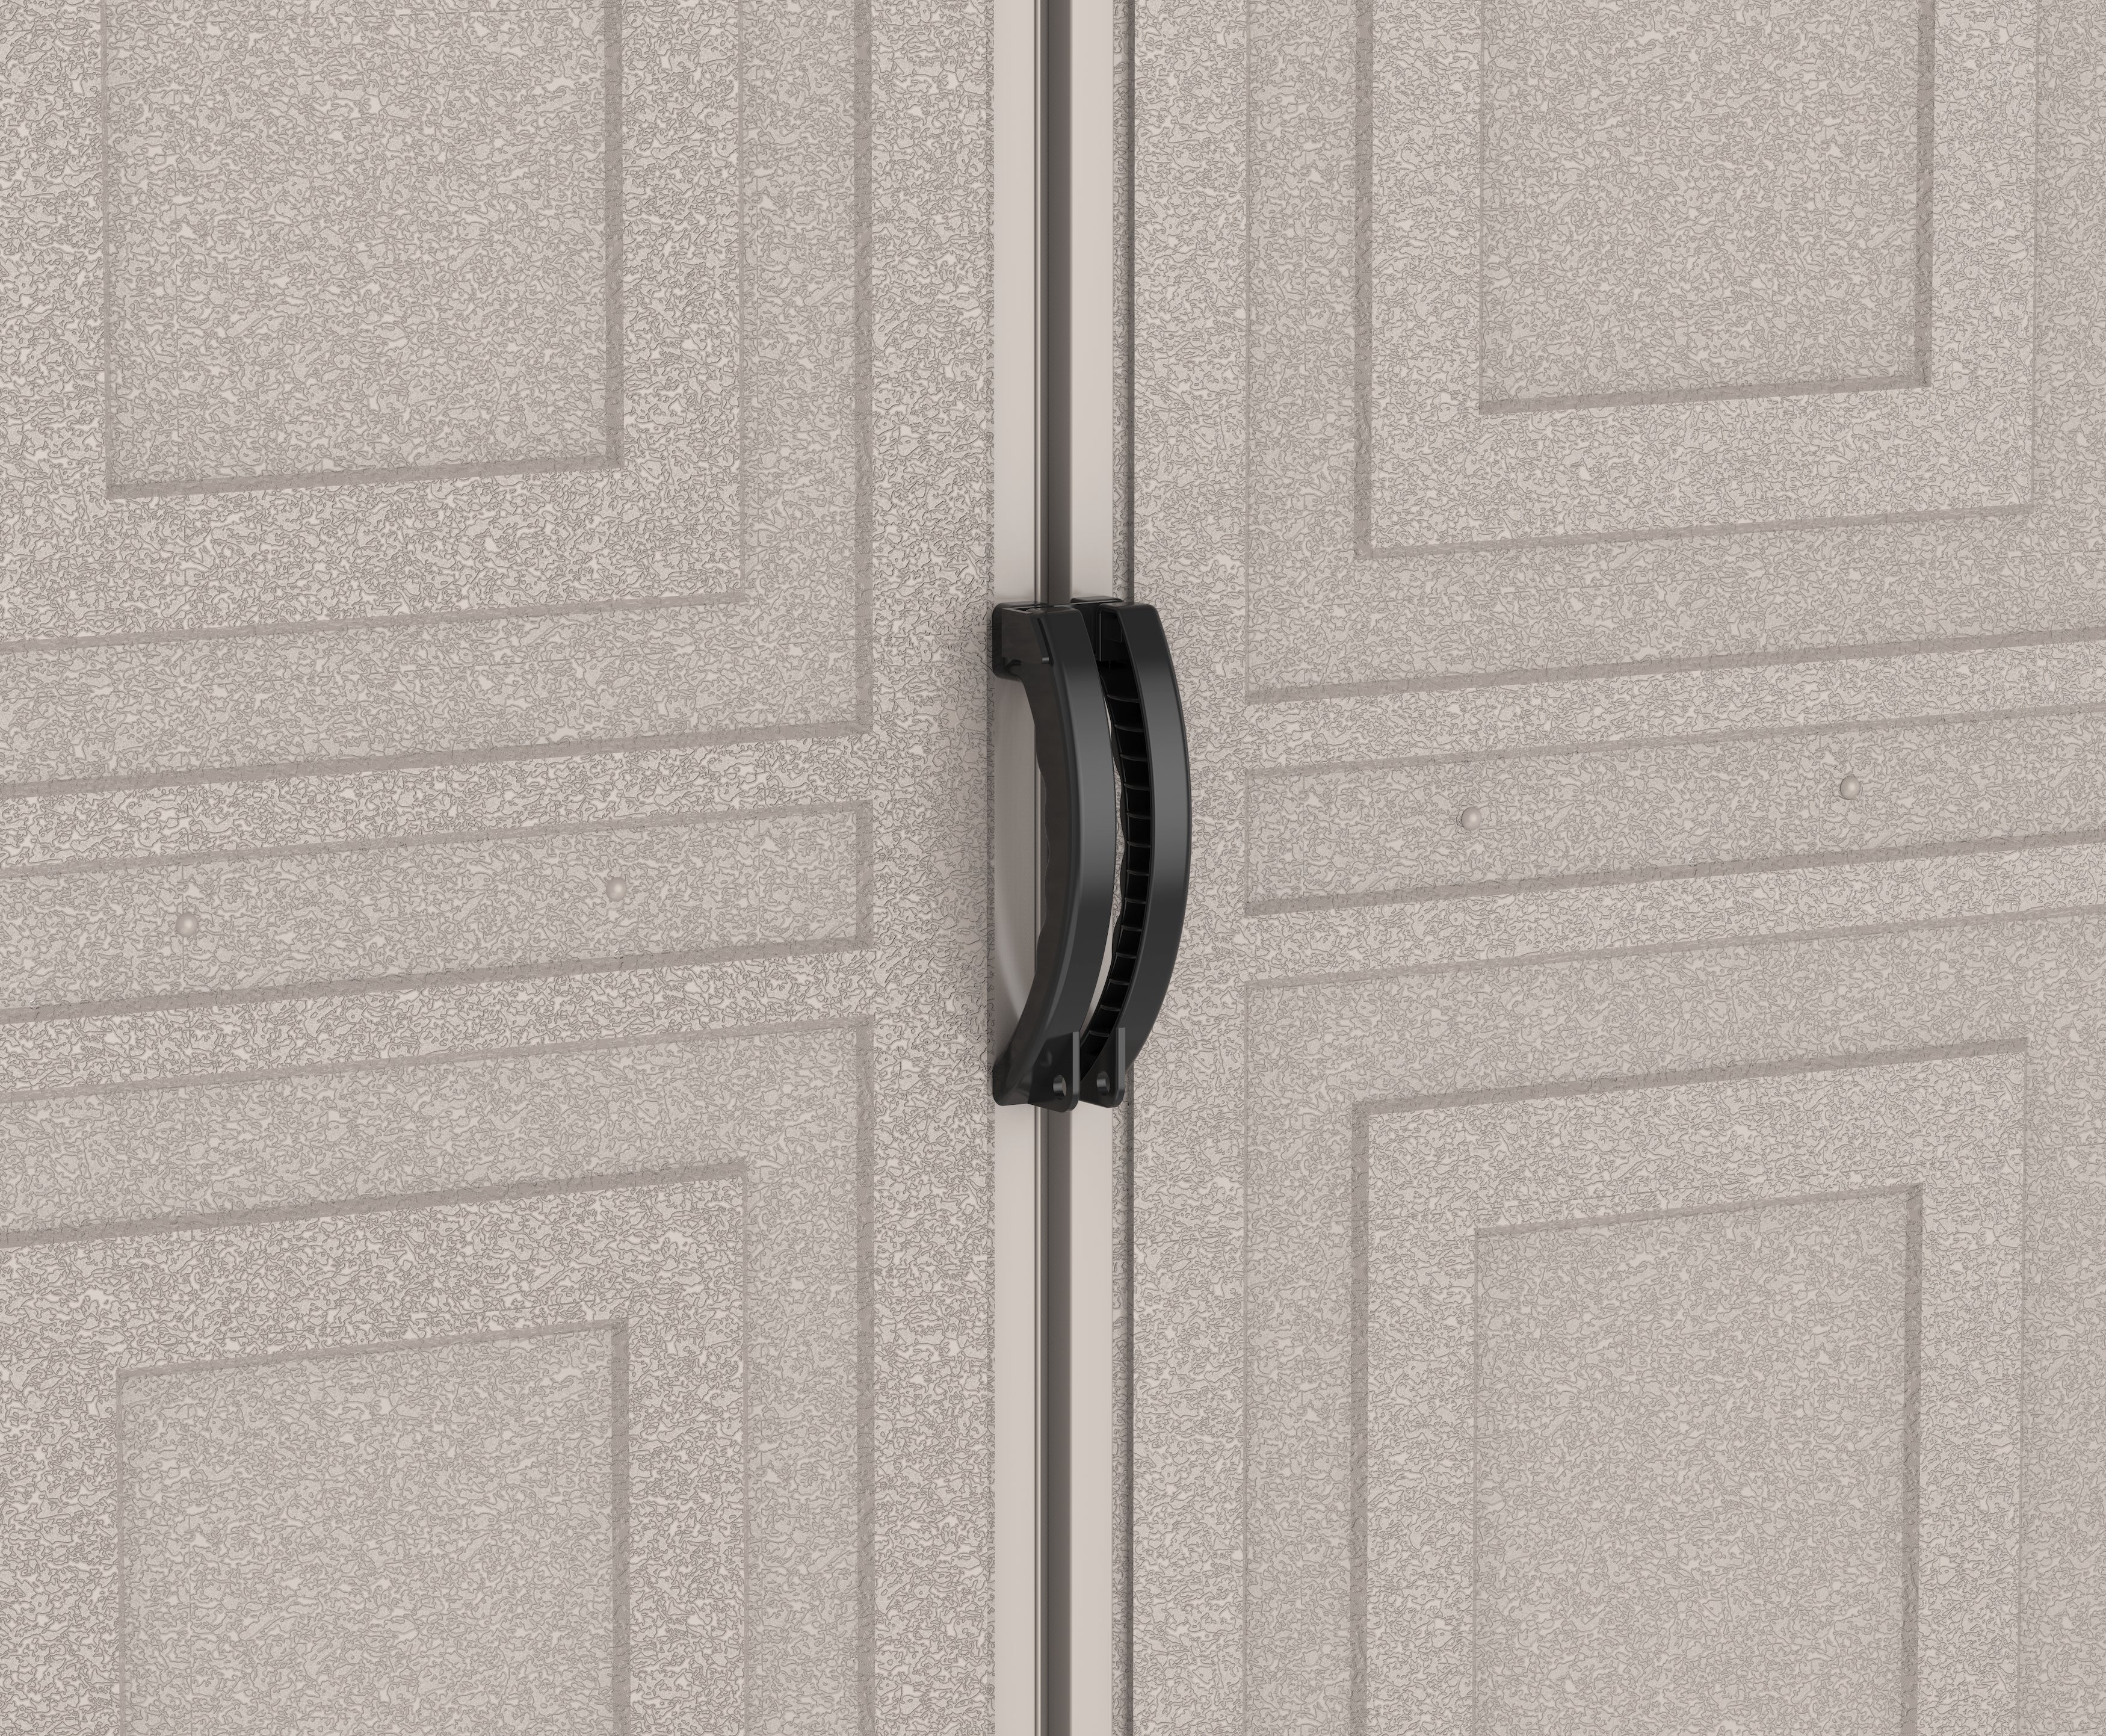 Duramax Vinyl Garage 10.5x20.5 w/ Foundation 2 Windows 15226 close up of locking door handles